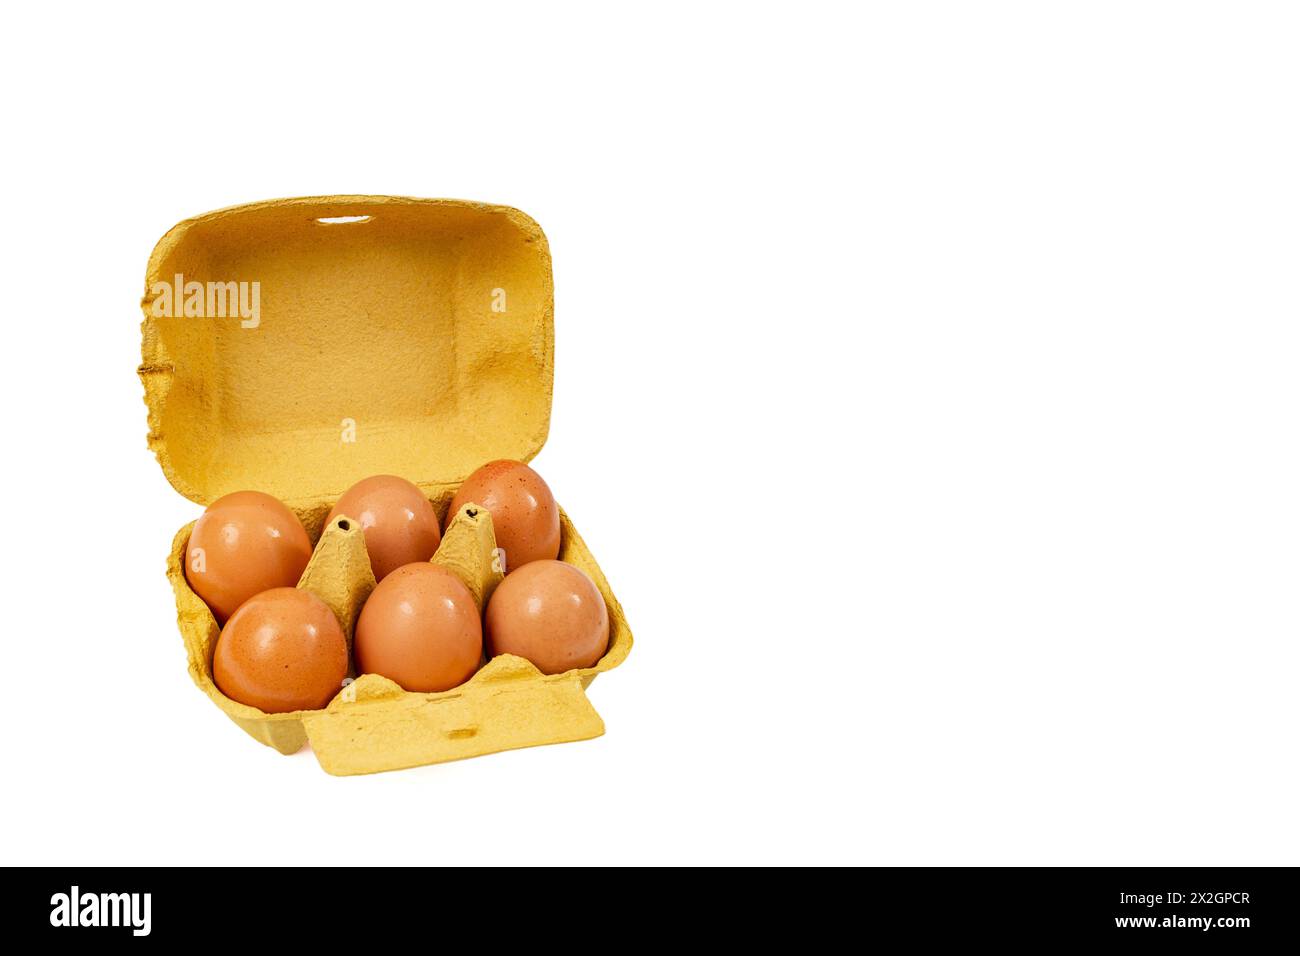 confezione da sei uova in cartone giallo, isolata su sfondo bianco, con spazio negativo Foto Stock